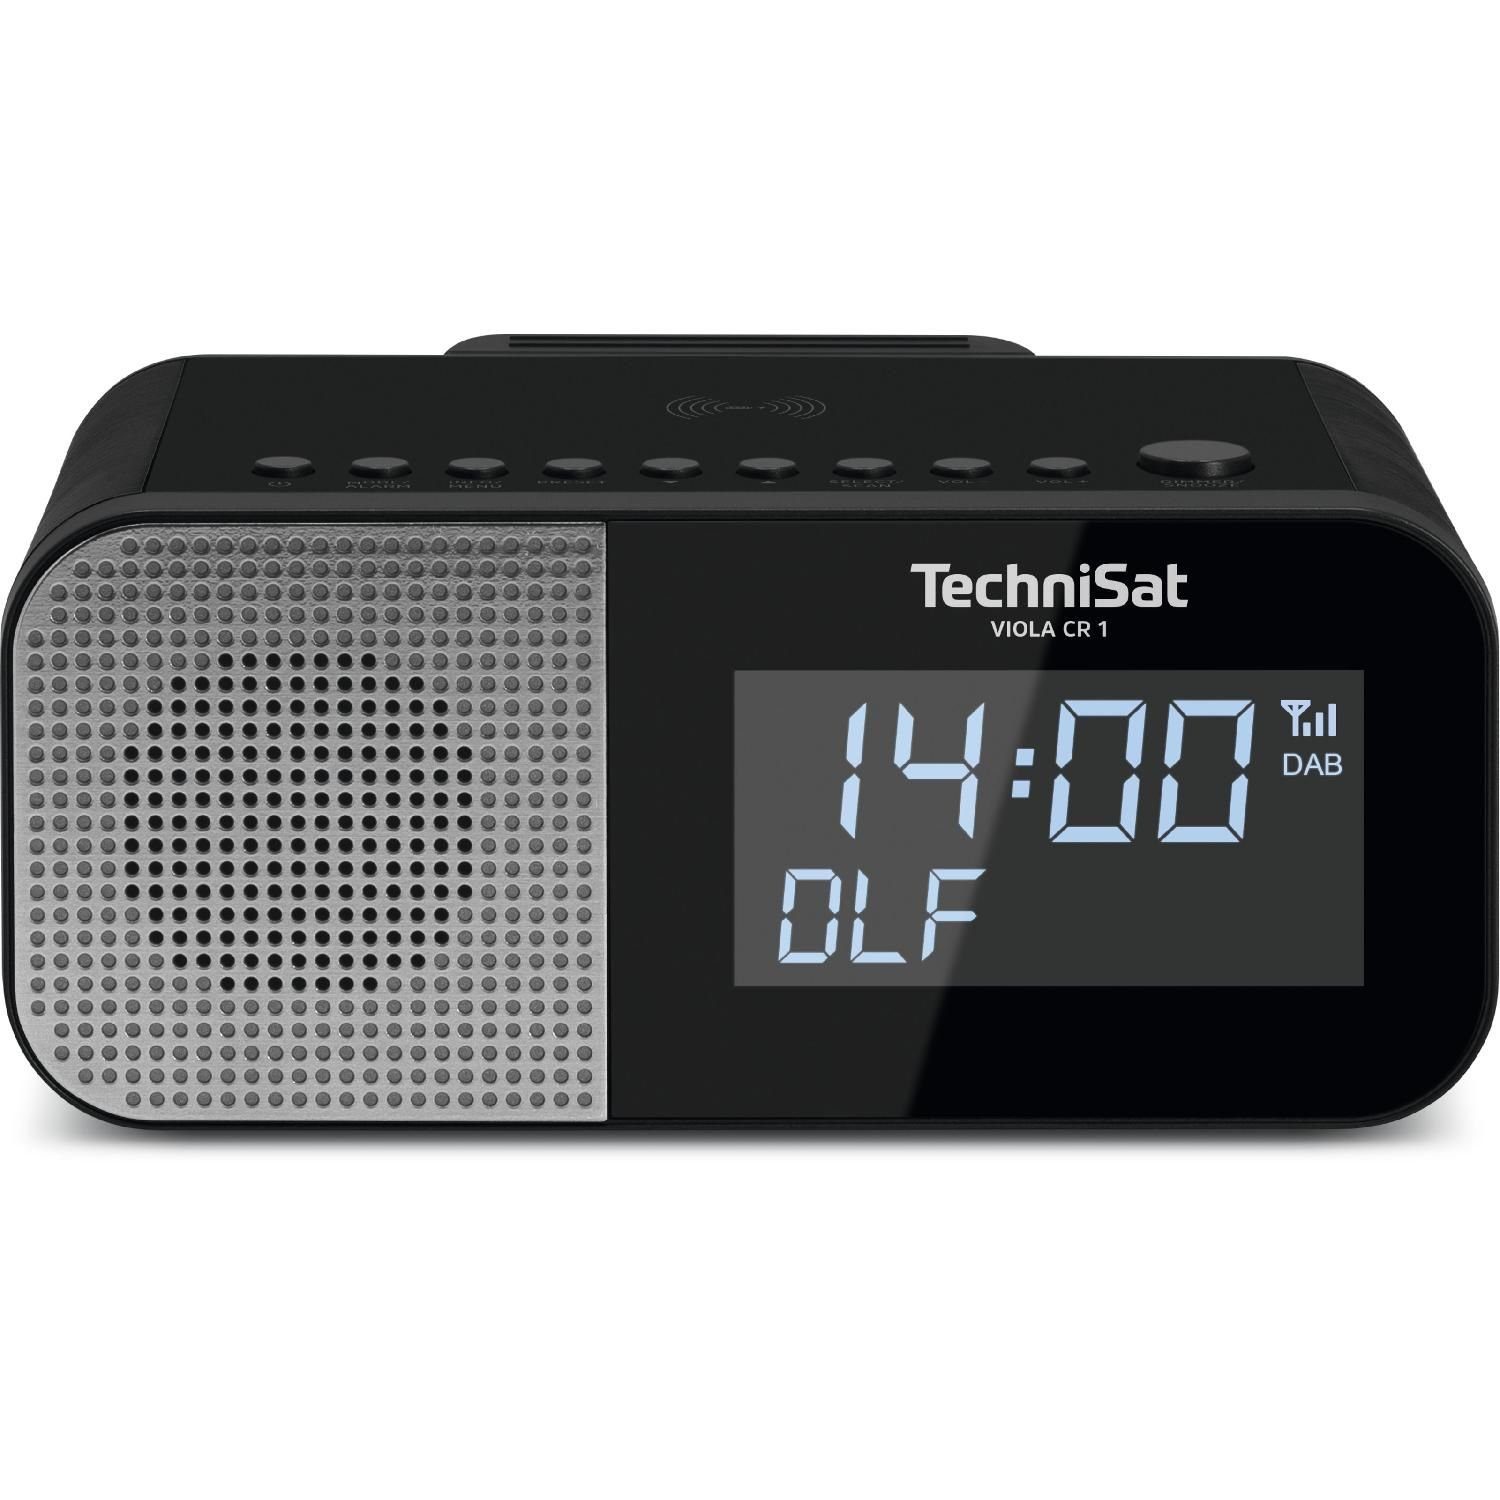 TechniSat VIOLA CR 1 D Wireless TechniSat Datumsanzeige, Digitalradio UKW-Radio Zwei Digitalradio, und (DAB) Radiowecktimer Uhr- Display Charging (DAB+ möglich)